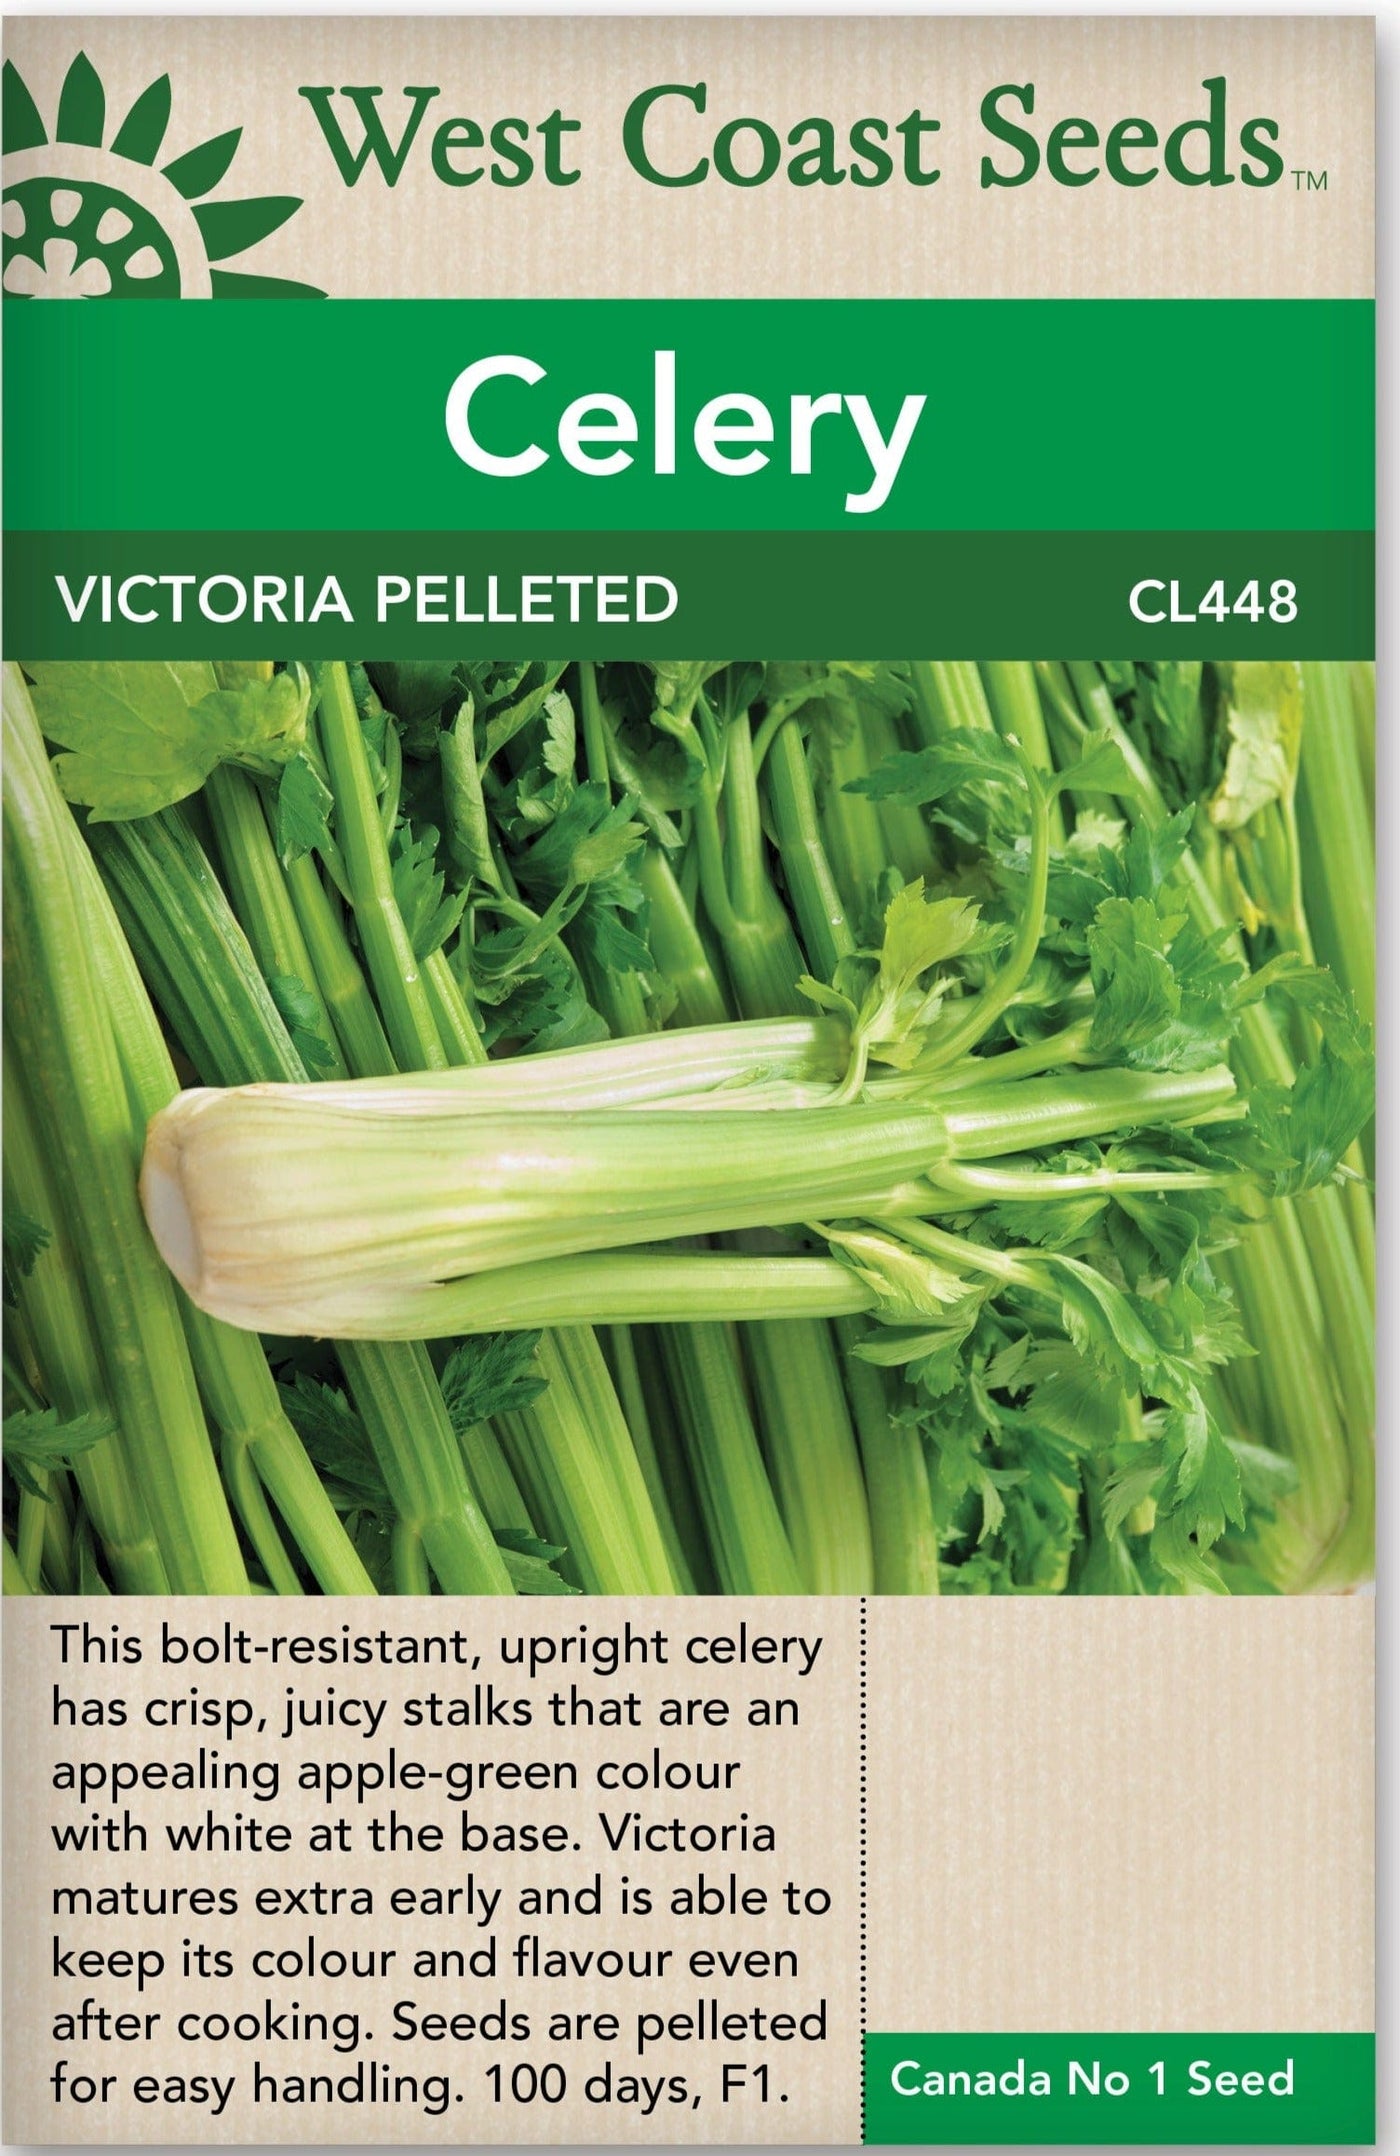 Celery Victoria Pelleted - West Coast Seeds